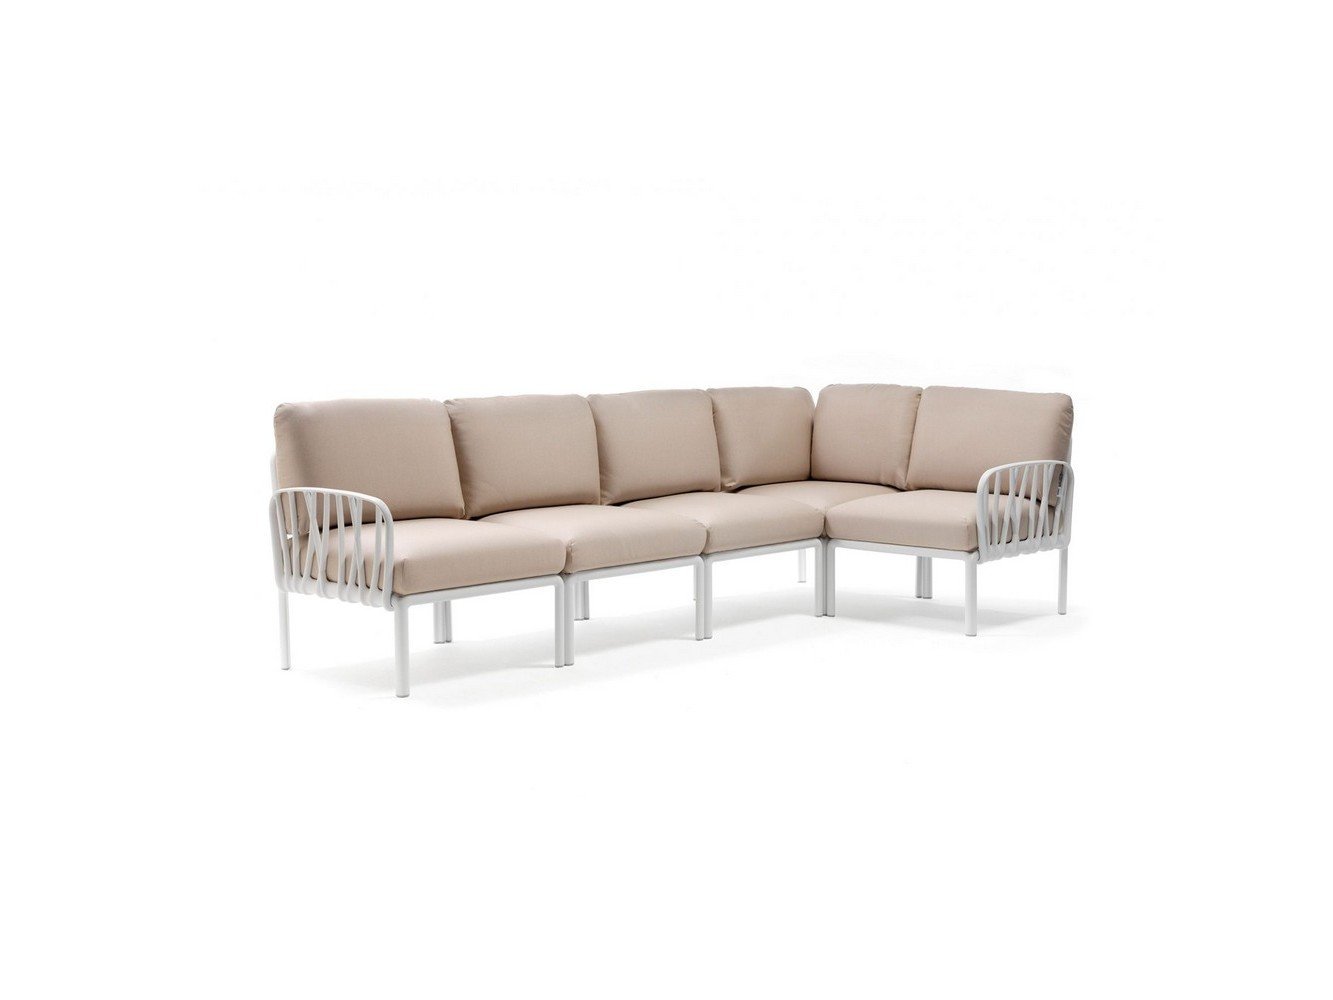 Komodo 5 Sofa